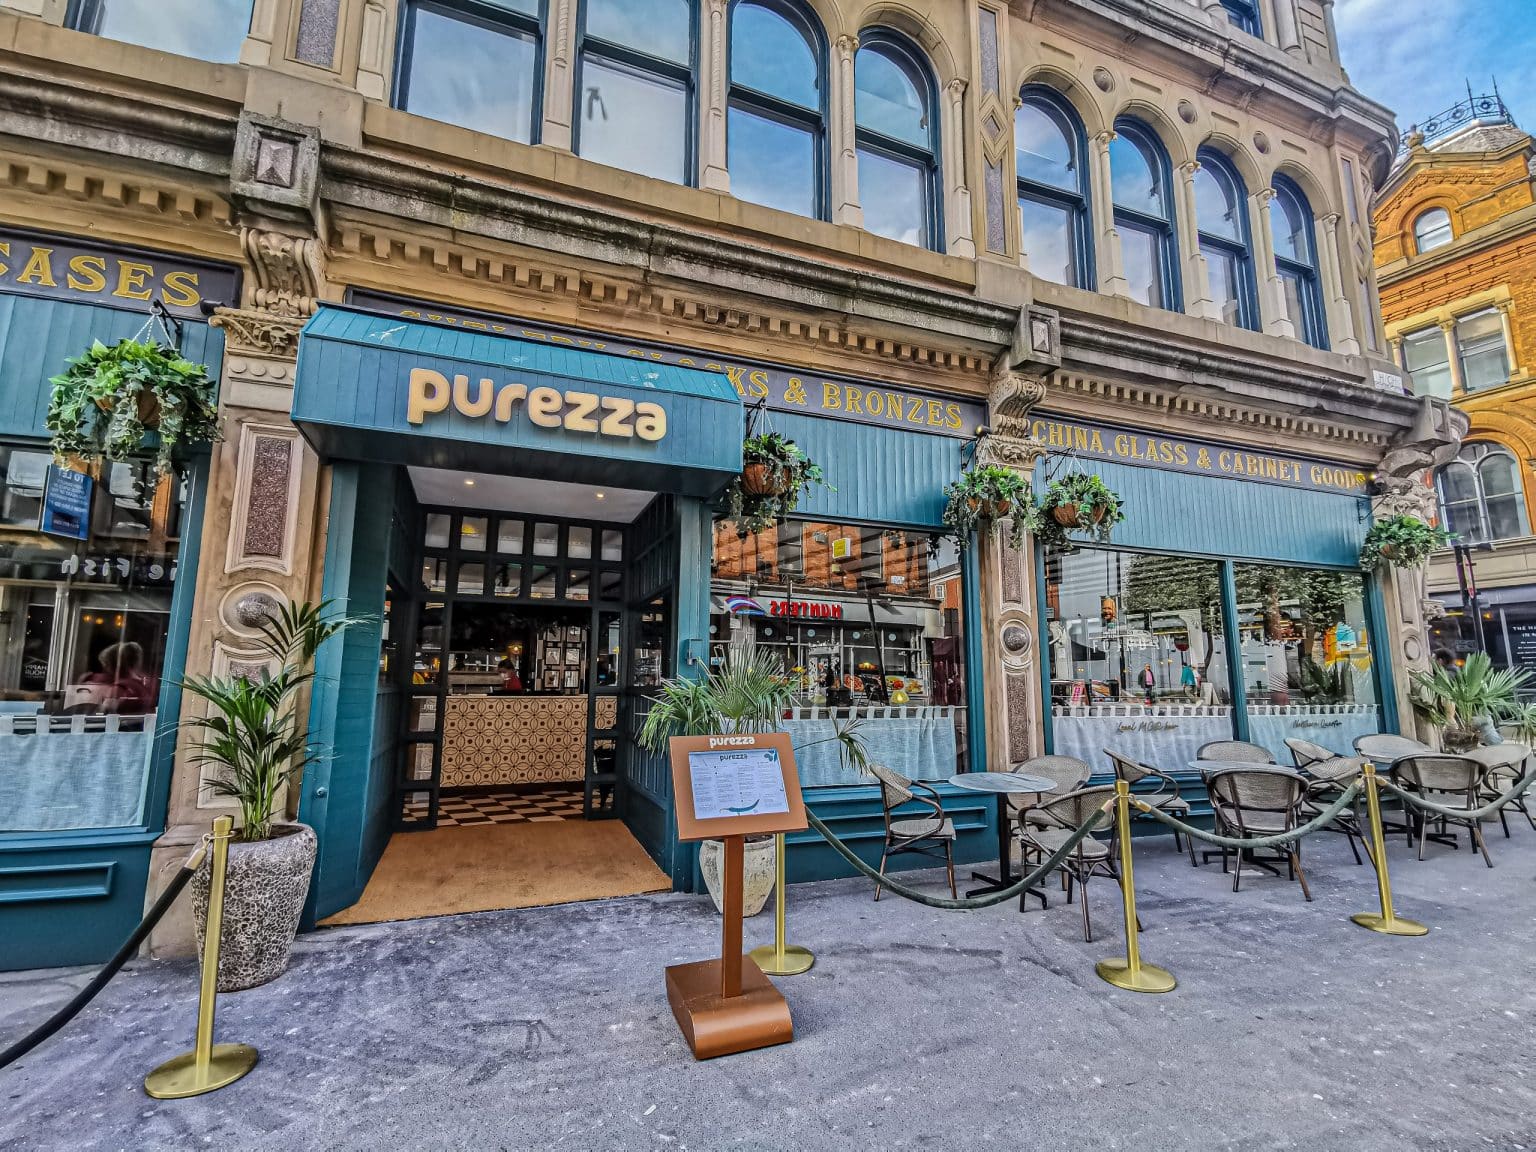 purezza-manchester-vegan-pizza-restaurant-exterior